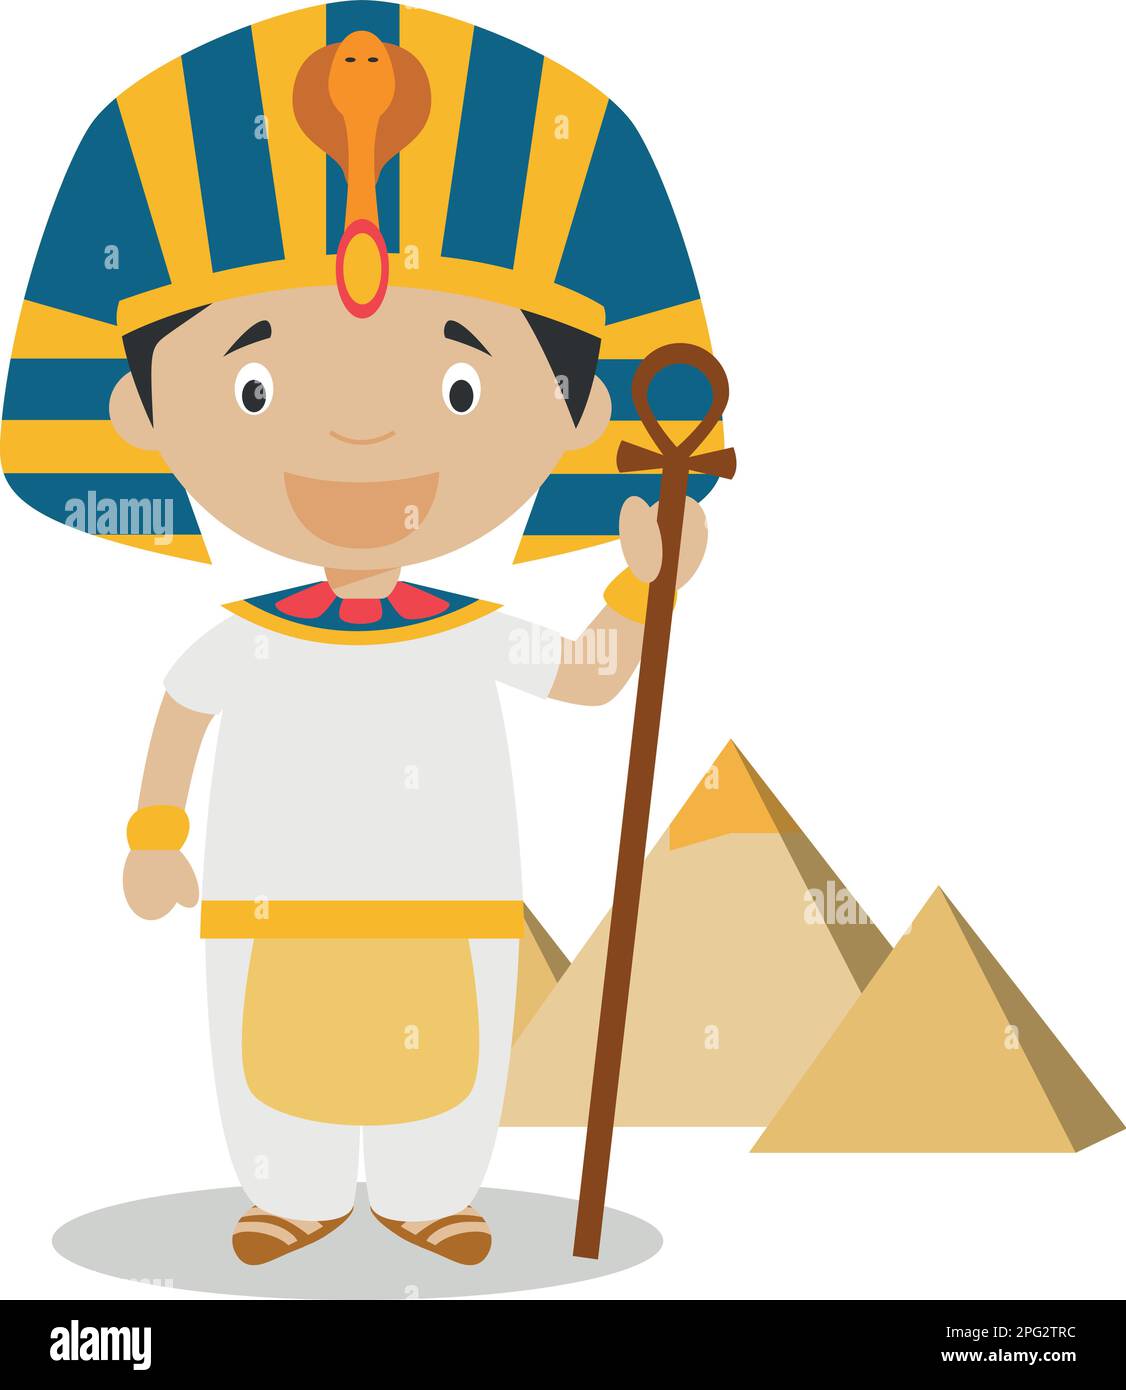 Personnage de dessin animé égyptien avec les Pyramides de Gizah. Illustration vectorielle. Collection d'histoire pour enfants. Illustration de Vecteur